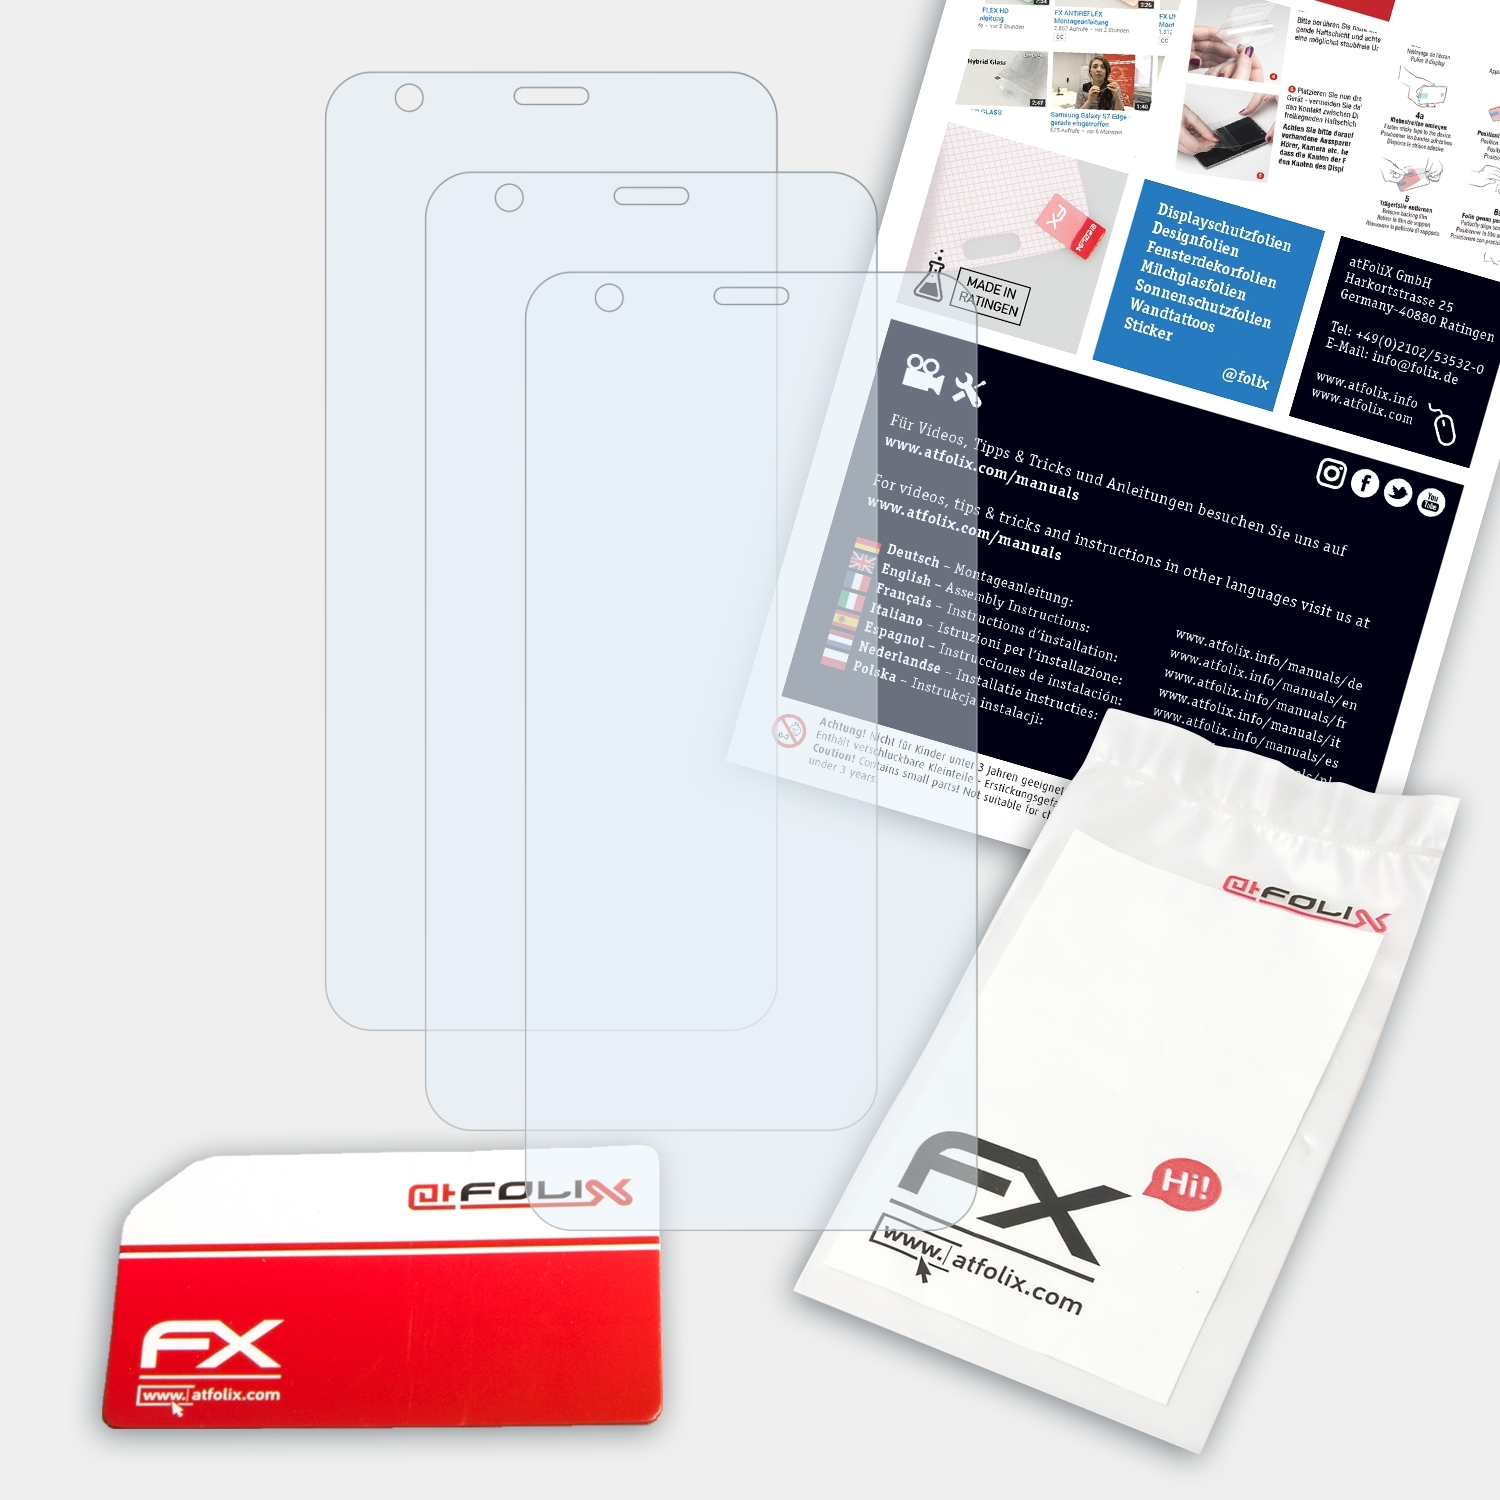 FX-Clear Aristo Displayschutz(für LG 3x ATFOLIX 4+)